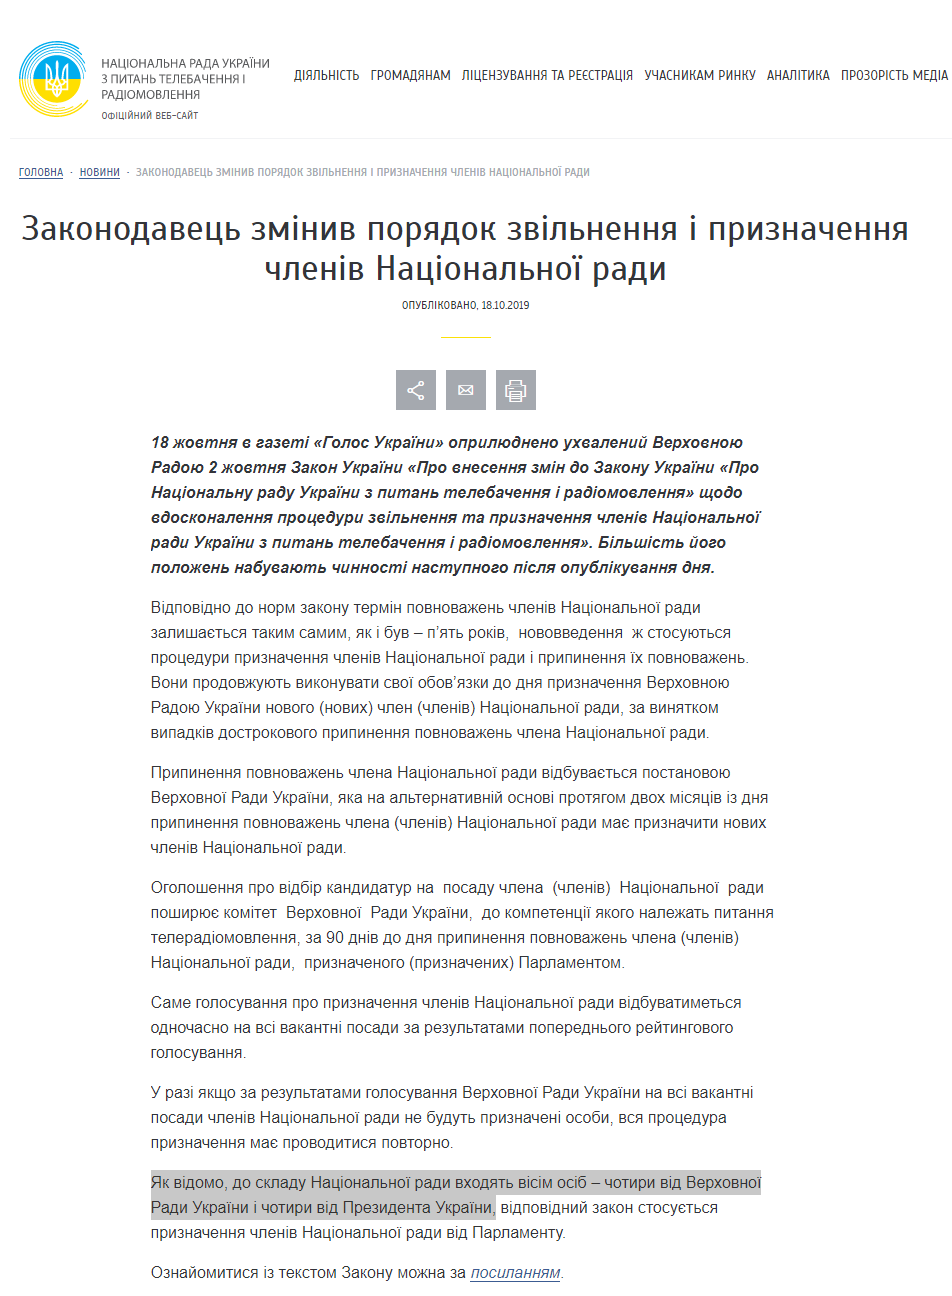 https://www.nrada.gov.ua/zakonodavets-zminyv-poryadok-zvilnennya-pryznachennya-chleniv-natsionalnoyi-rady/